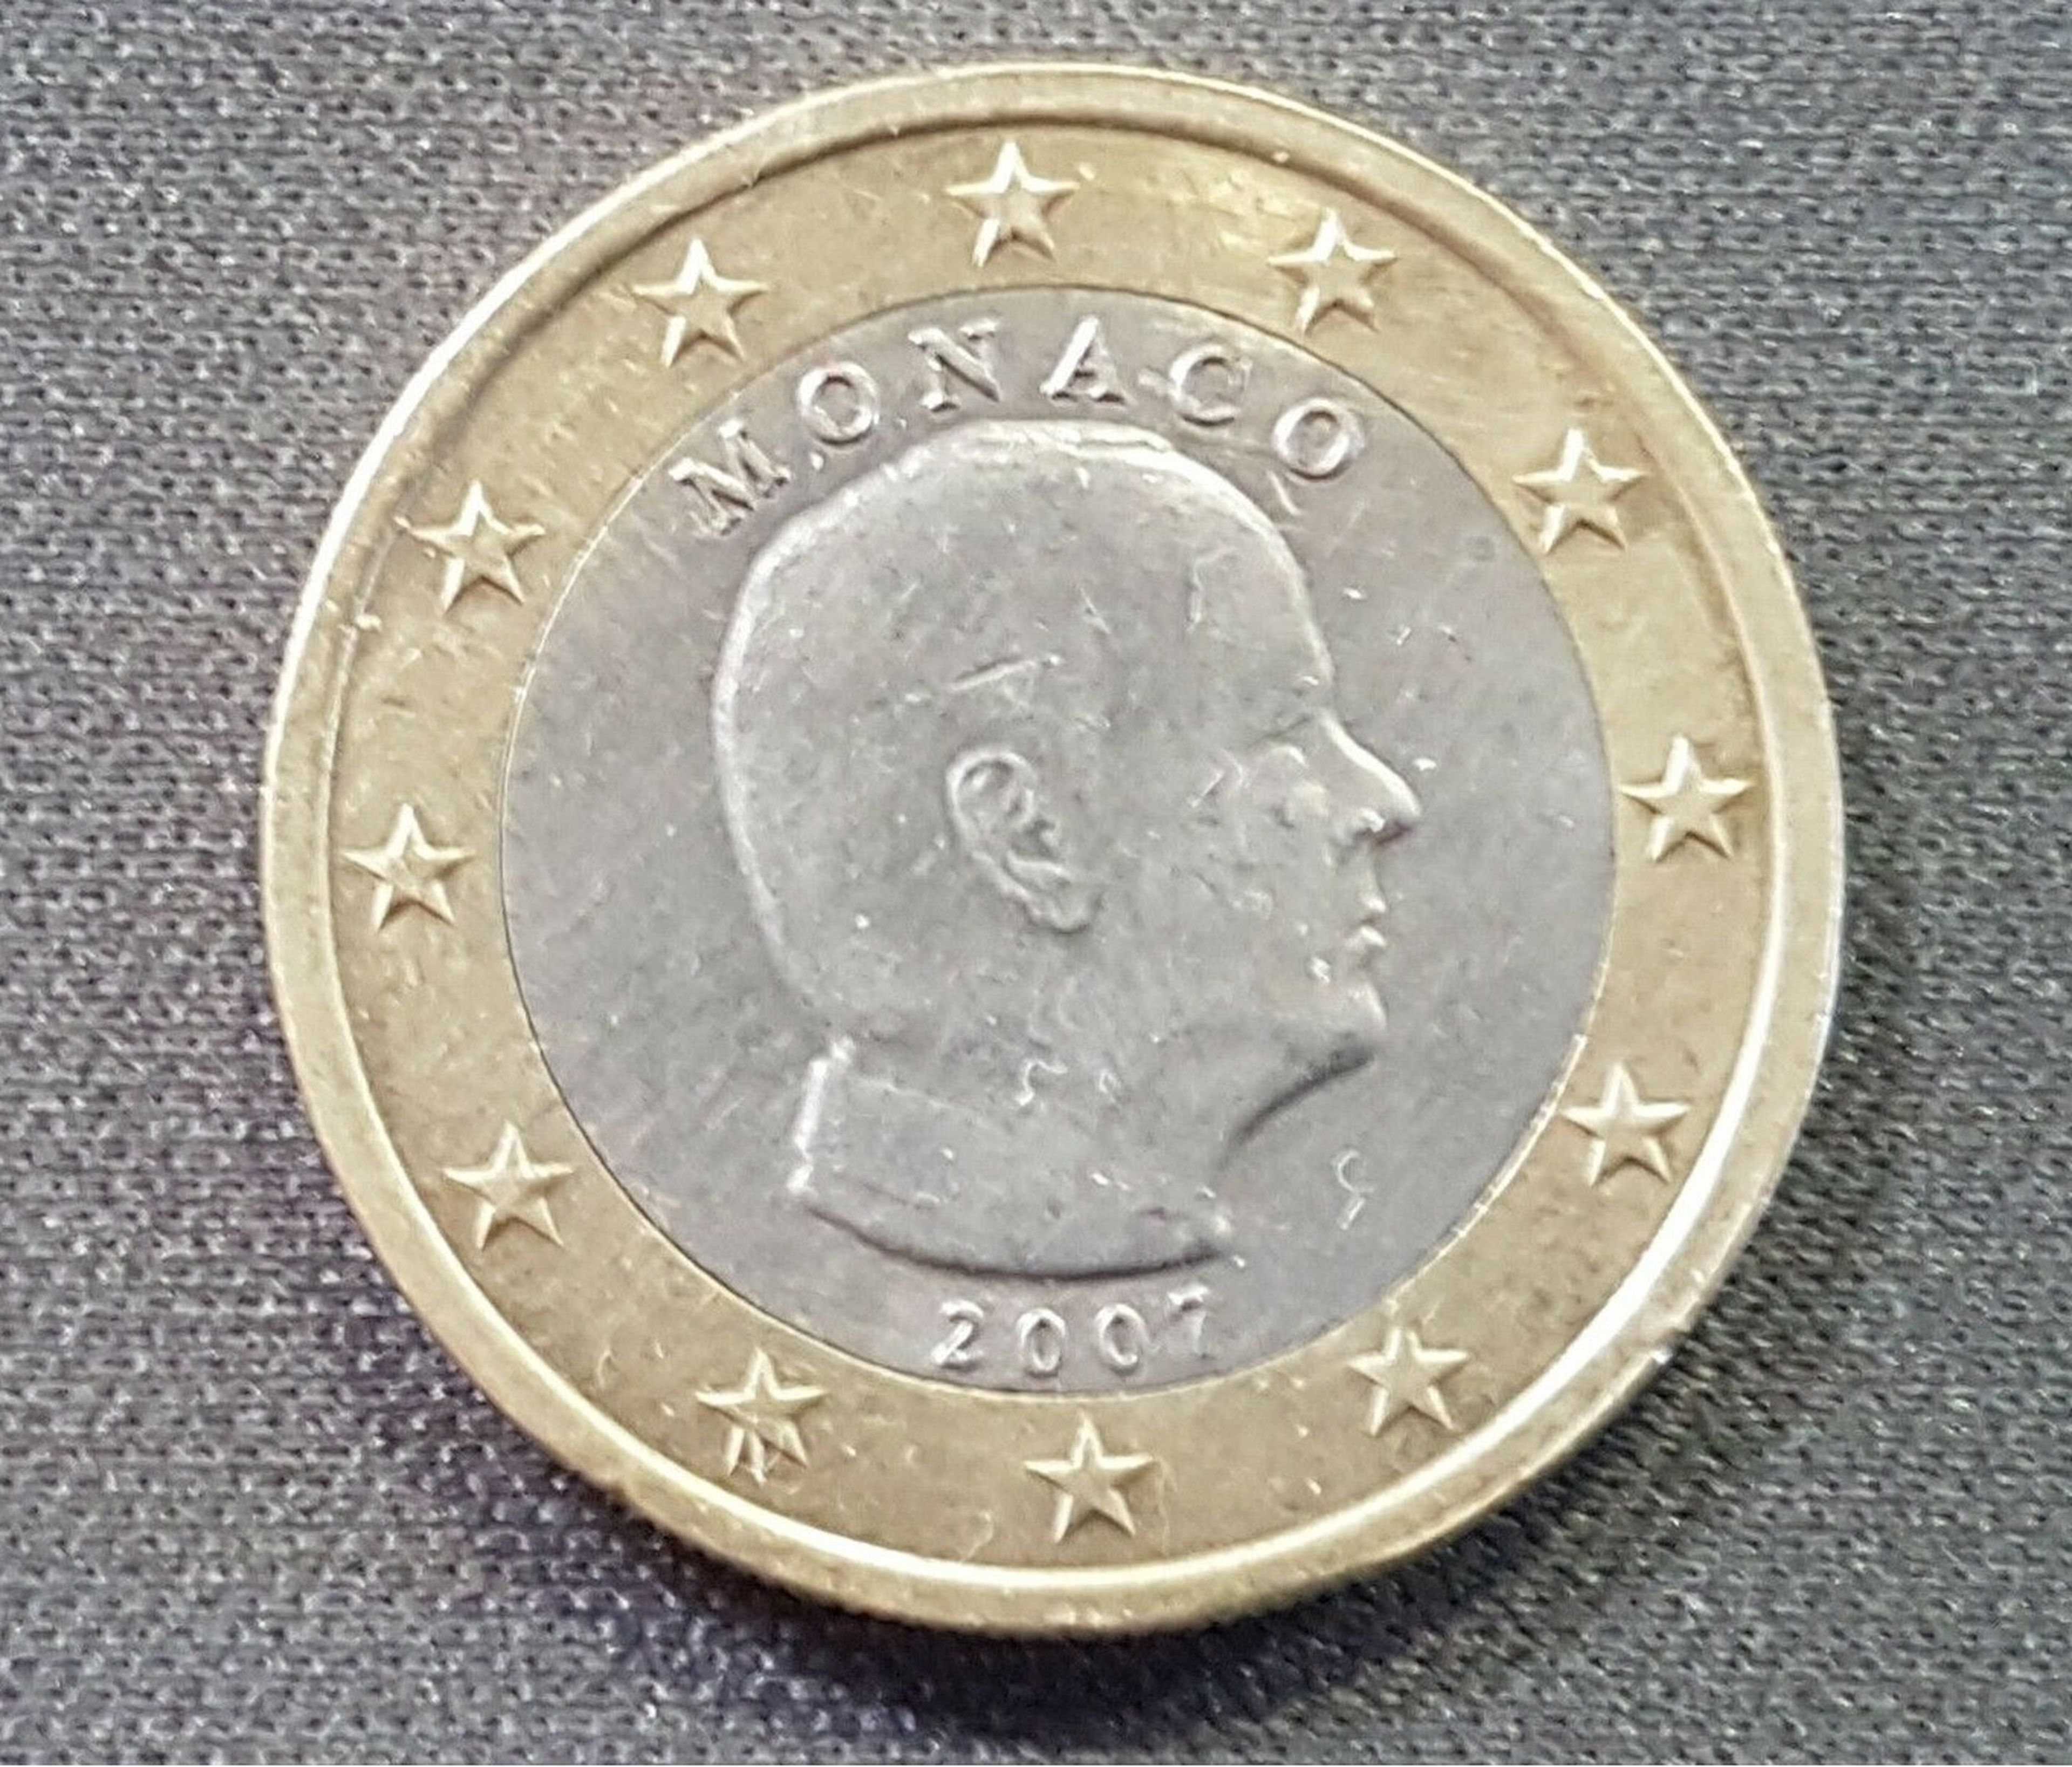 MONEDA DE PAGO: 1 EURO MONEDA DE PAGO